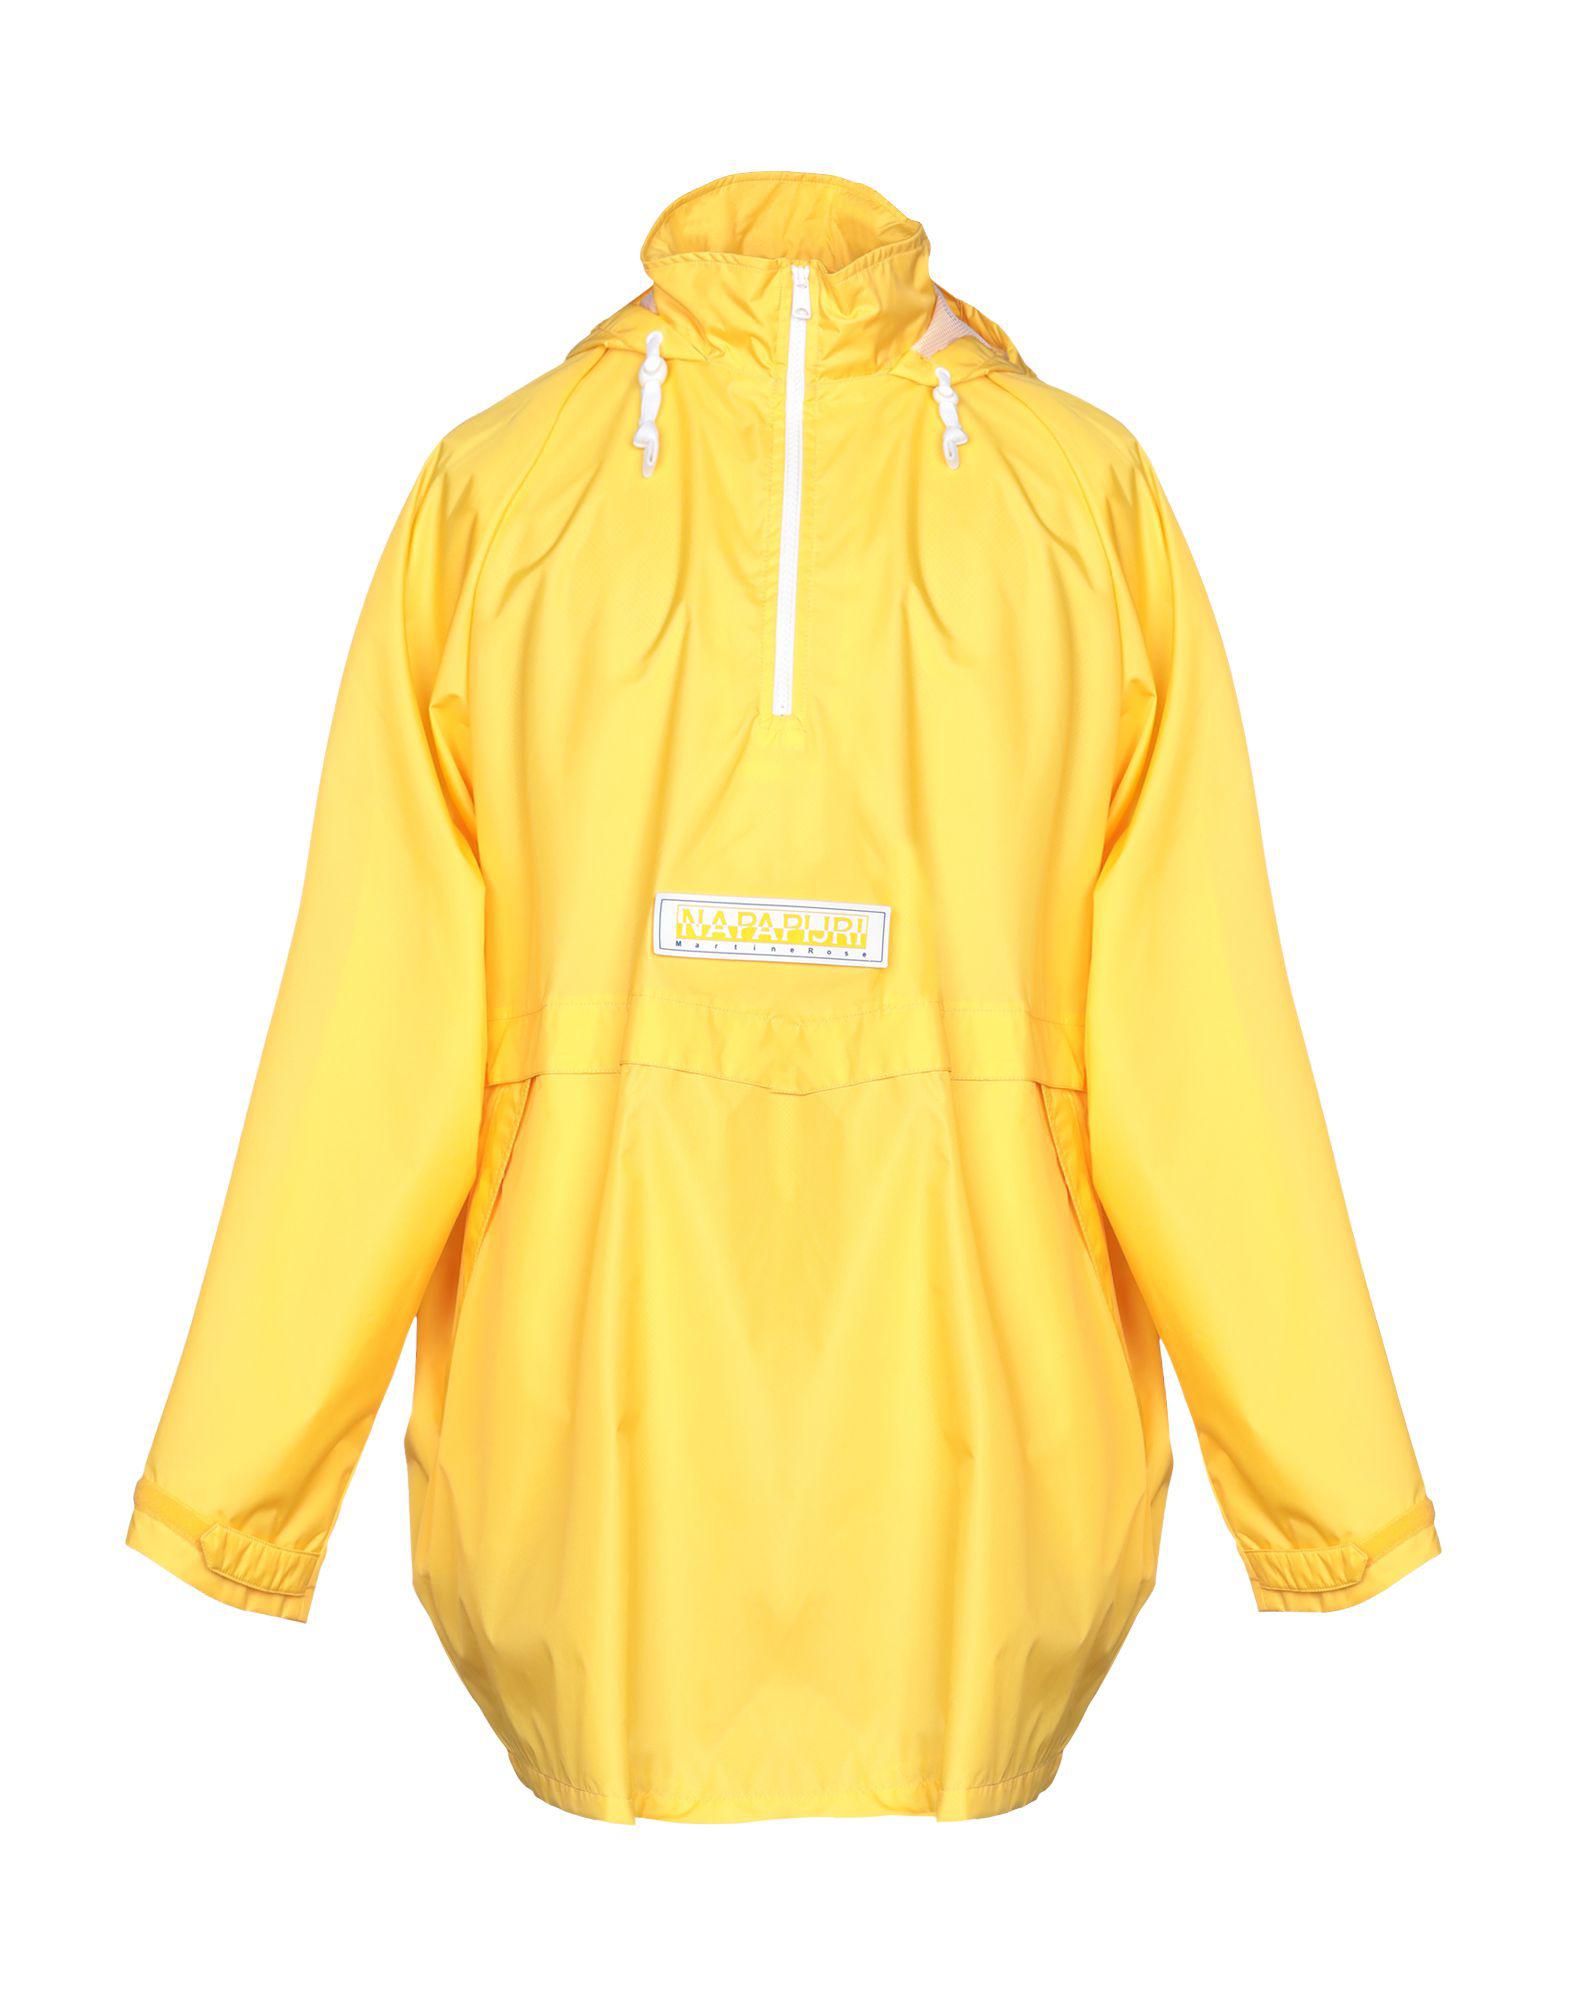 Napapijri Jacket in Yellow for Men - Lyst